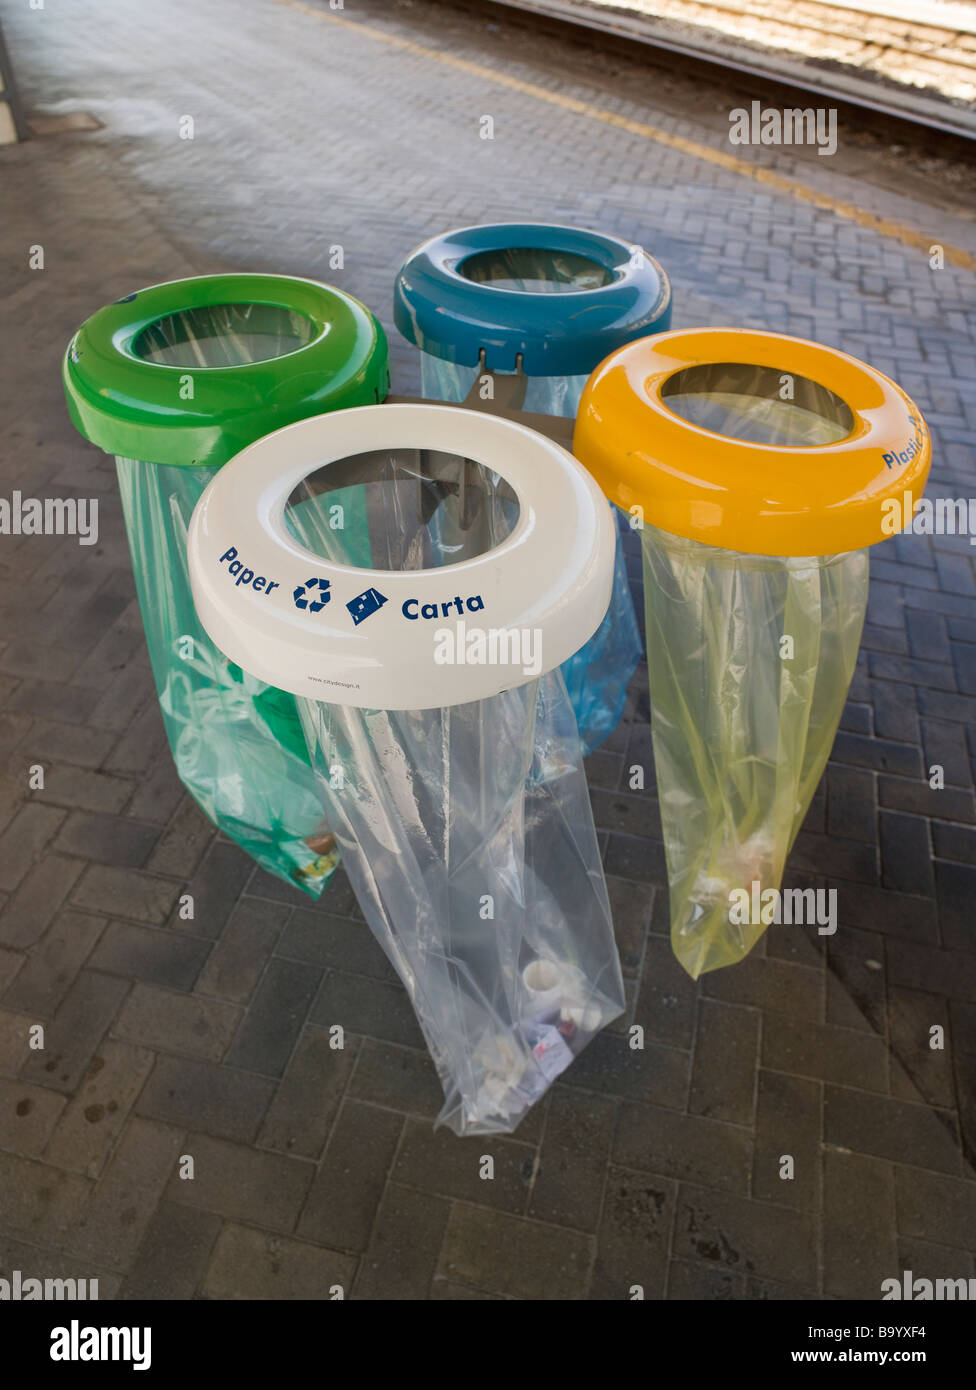 Colore sacchi di riciclaggio della stazione di Bologna Italia bianco per carta per giallo blu in plastica per alluminio verde per i rifiuti generici Foto Stock